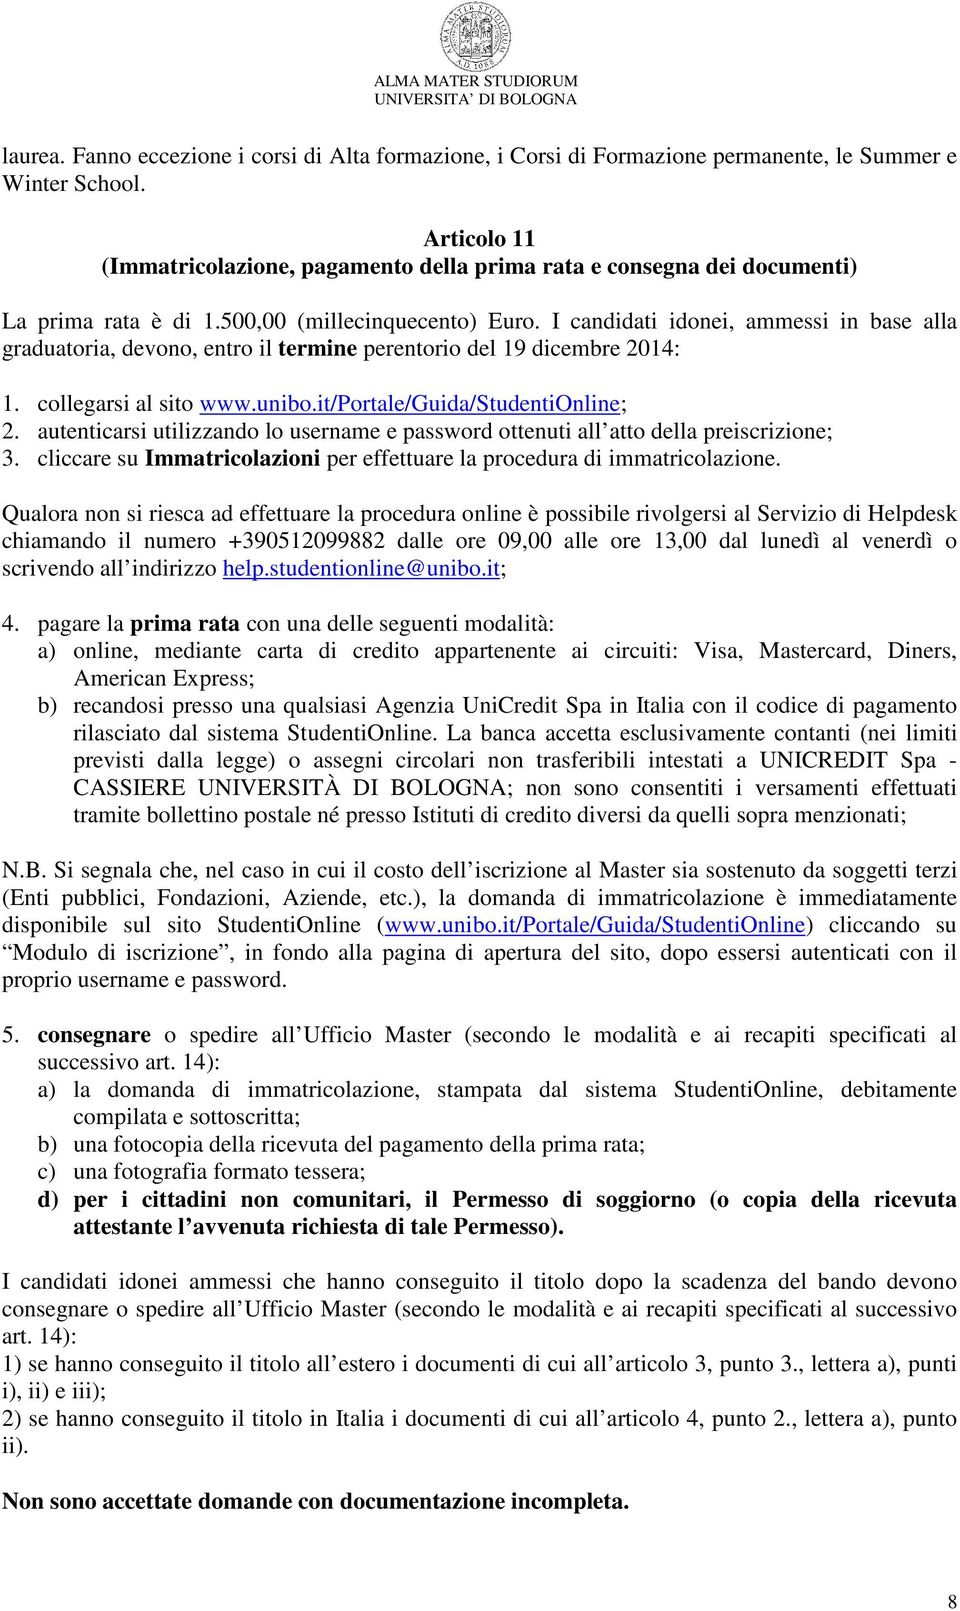 I candidati idonei, ammessi in base alla graduatoria, devono, entro il termine perentorio del 19 dicembre 2014: 1. collegarsi al sito www.unibo.it/portale/guida/studentionline; 2.